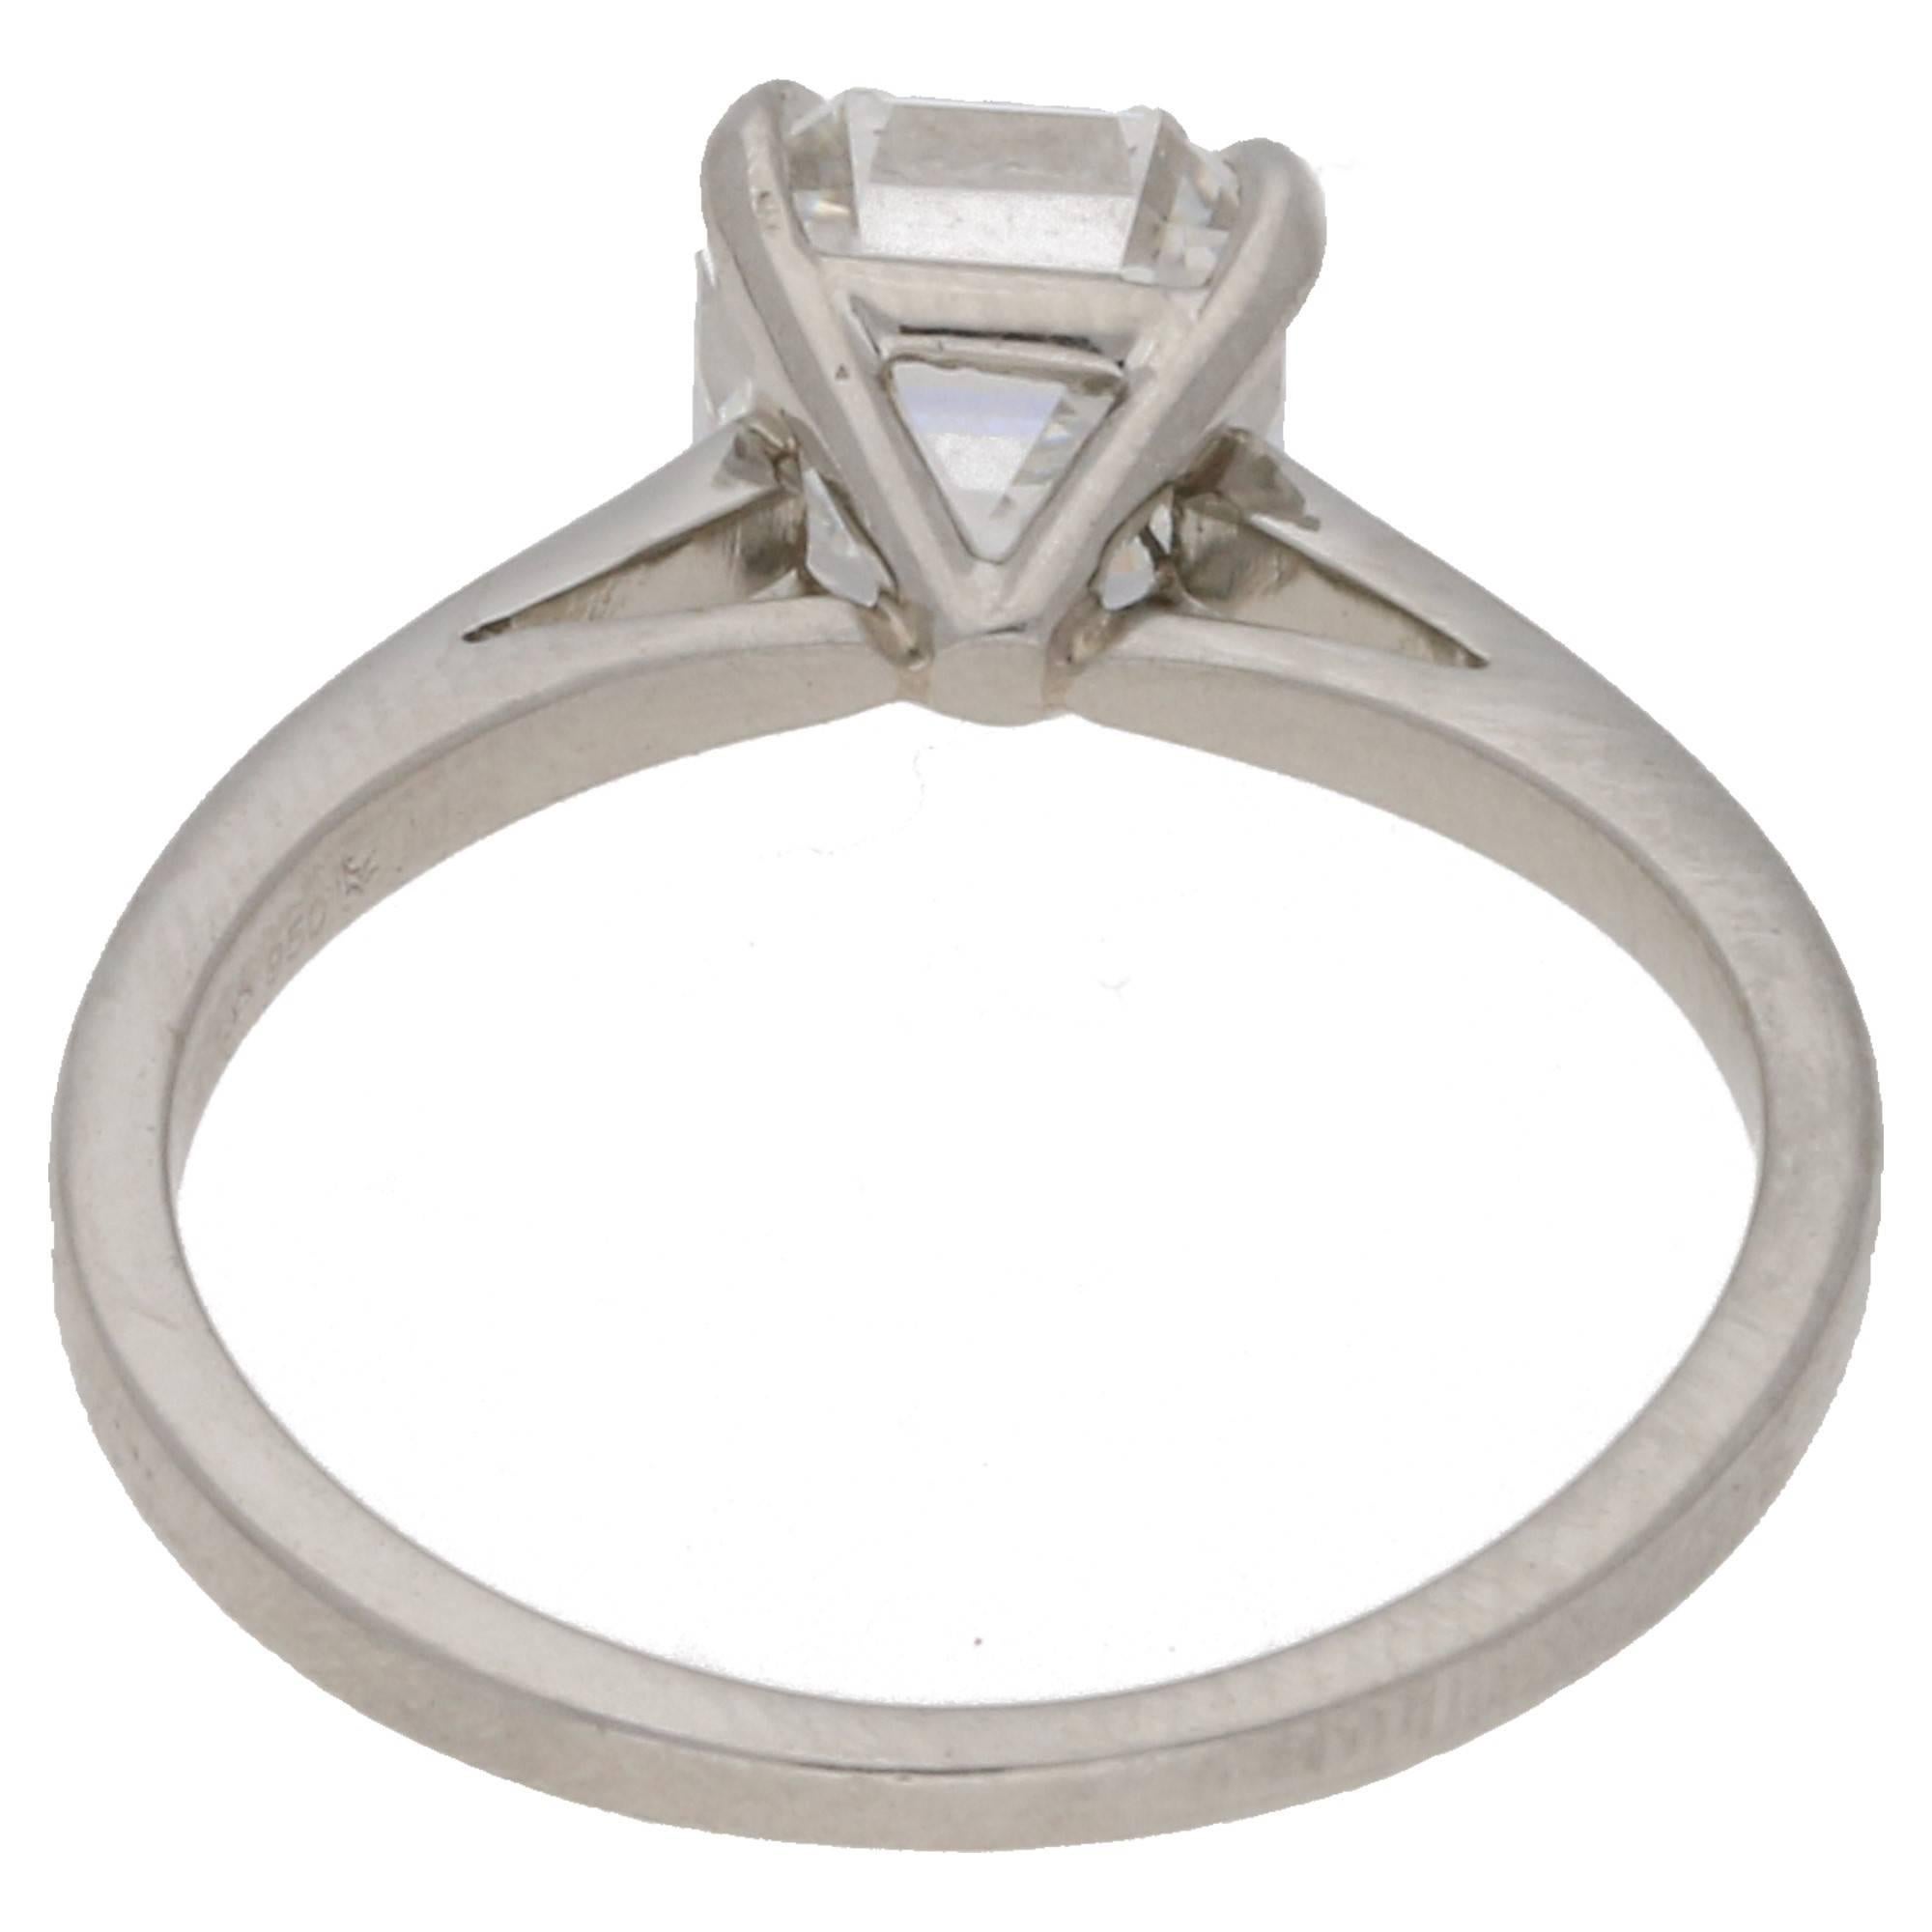 1.5 carat asscher cut diamond ring